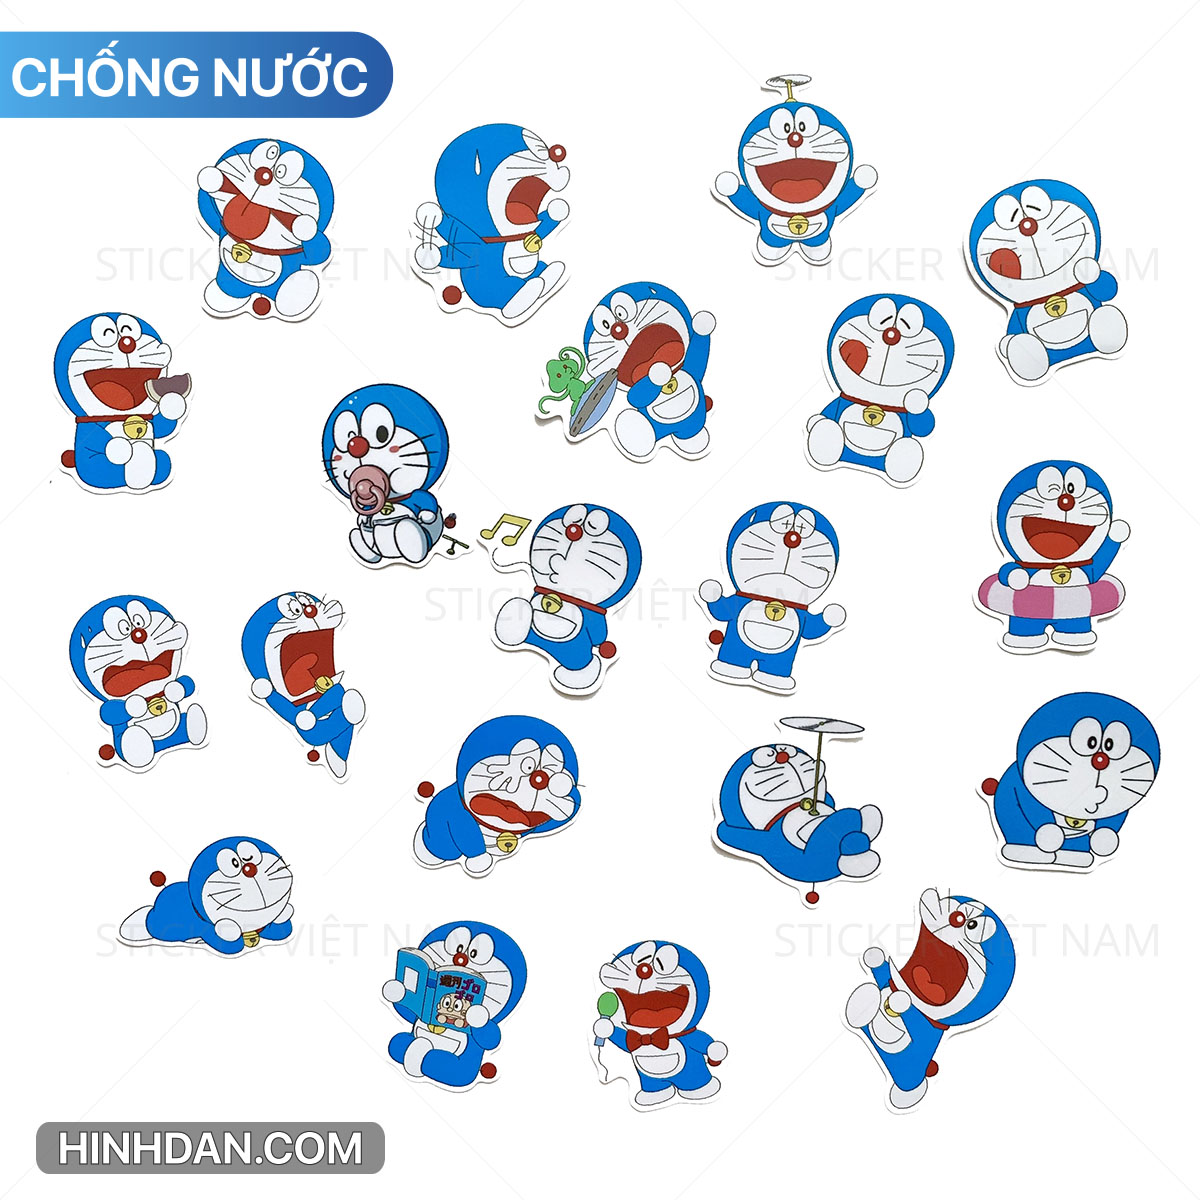 Chào mừng bạn đến với bộ sticker Doraemon dễ thương nhất. Bộ sticker thiết kế lại những hình ảnh đáng yêu và ngộ nghĩnh nhất của Doraemon sẽ giúp bạn thêm phần thú vị, tươi mới cho bức tranh nhắn nhủ yêu thương của mình.